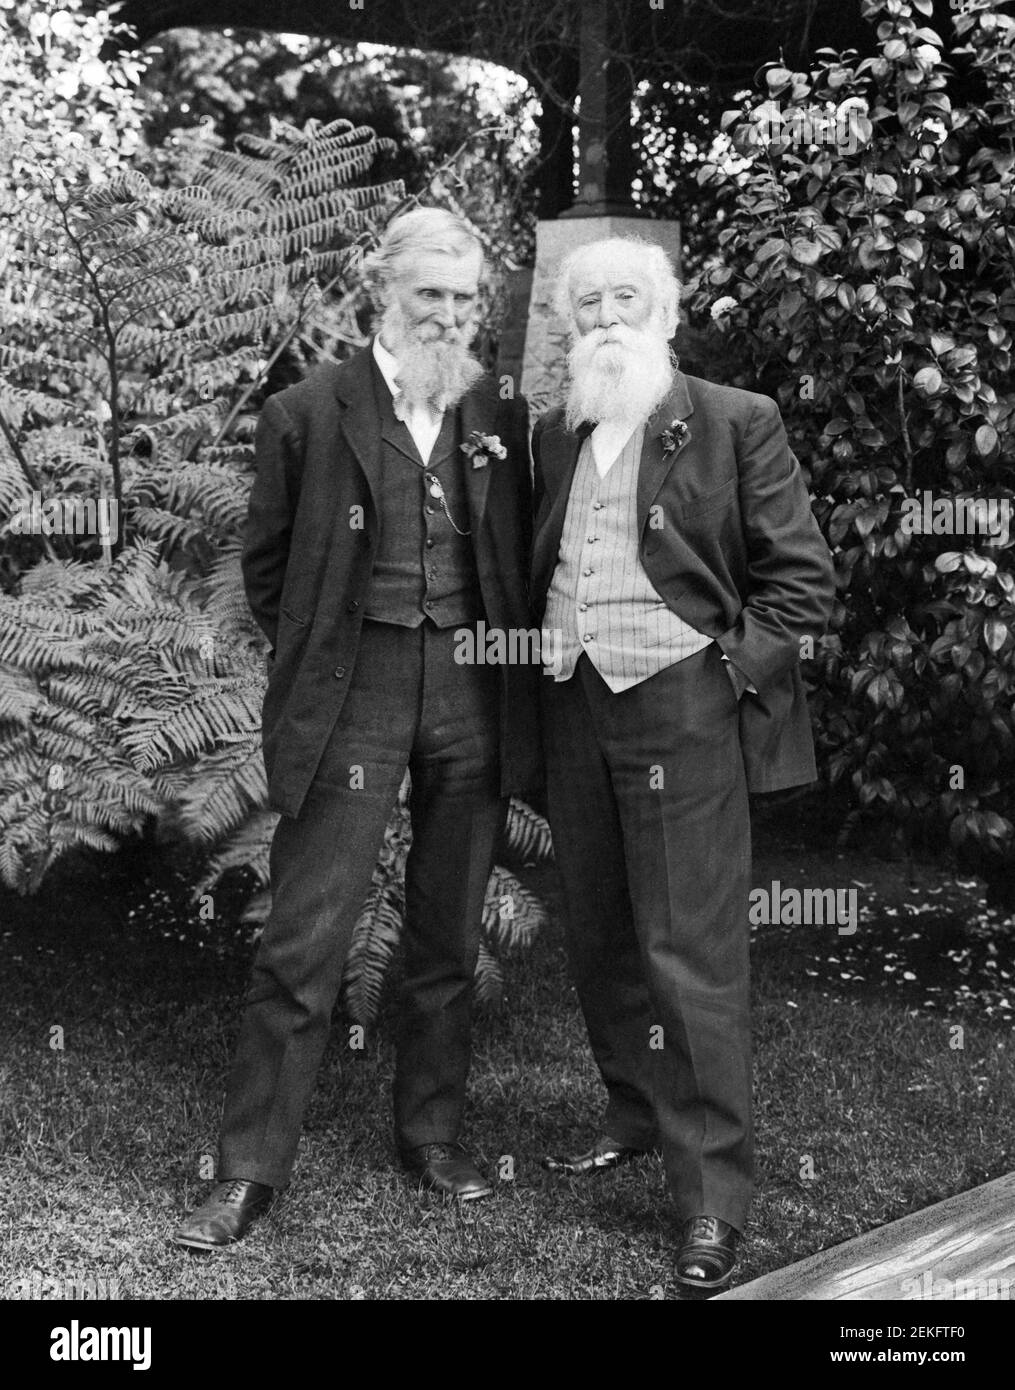 Scottish American naturalist, John Muir (1838-1914) and fellow American naturalist, John Burroughs (1837-1921) in Pasadena, California, c.1909-1912 Stock Photo